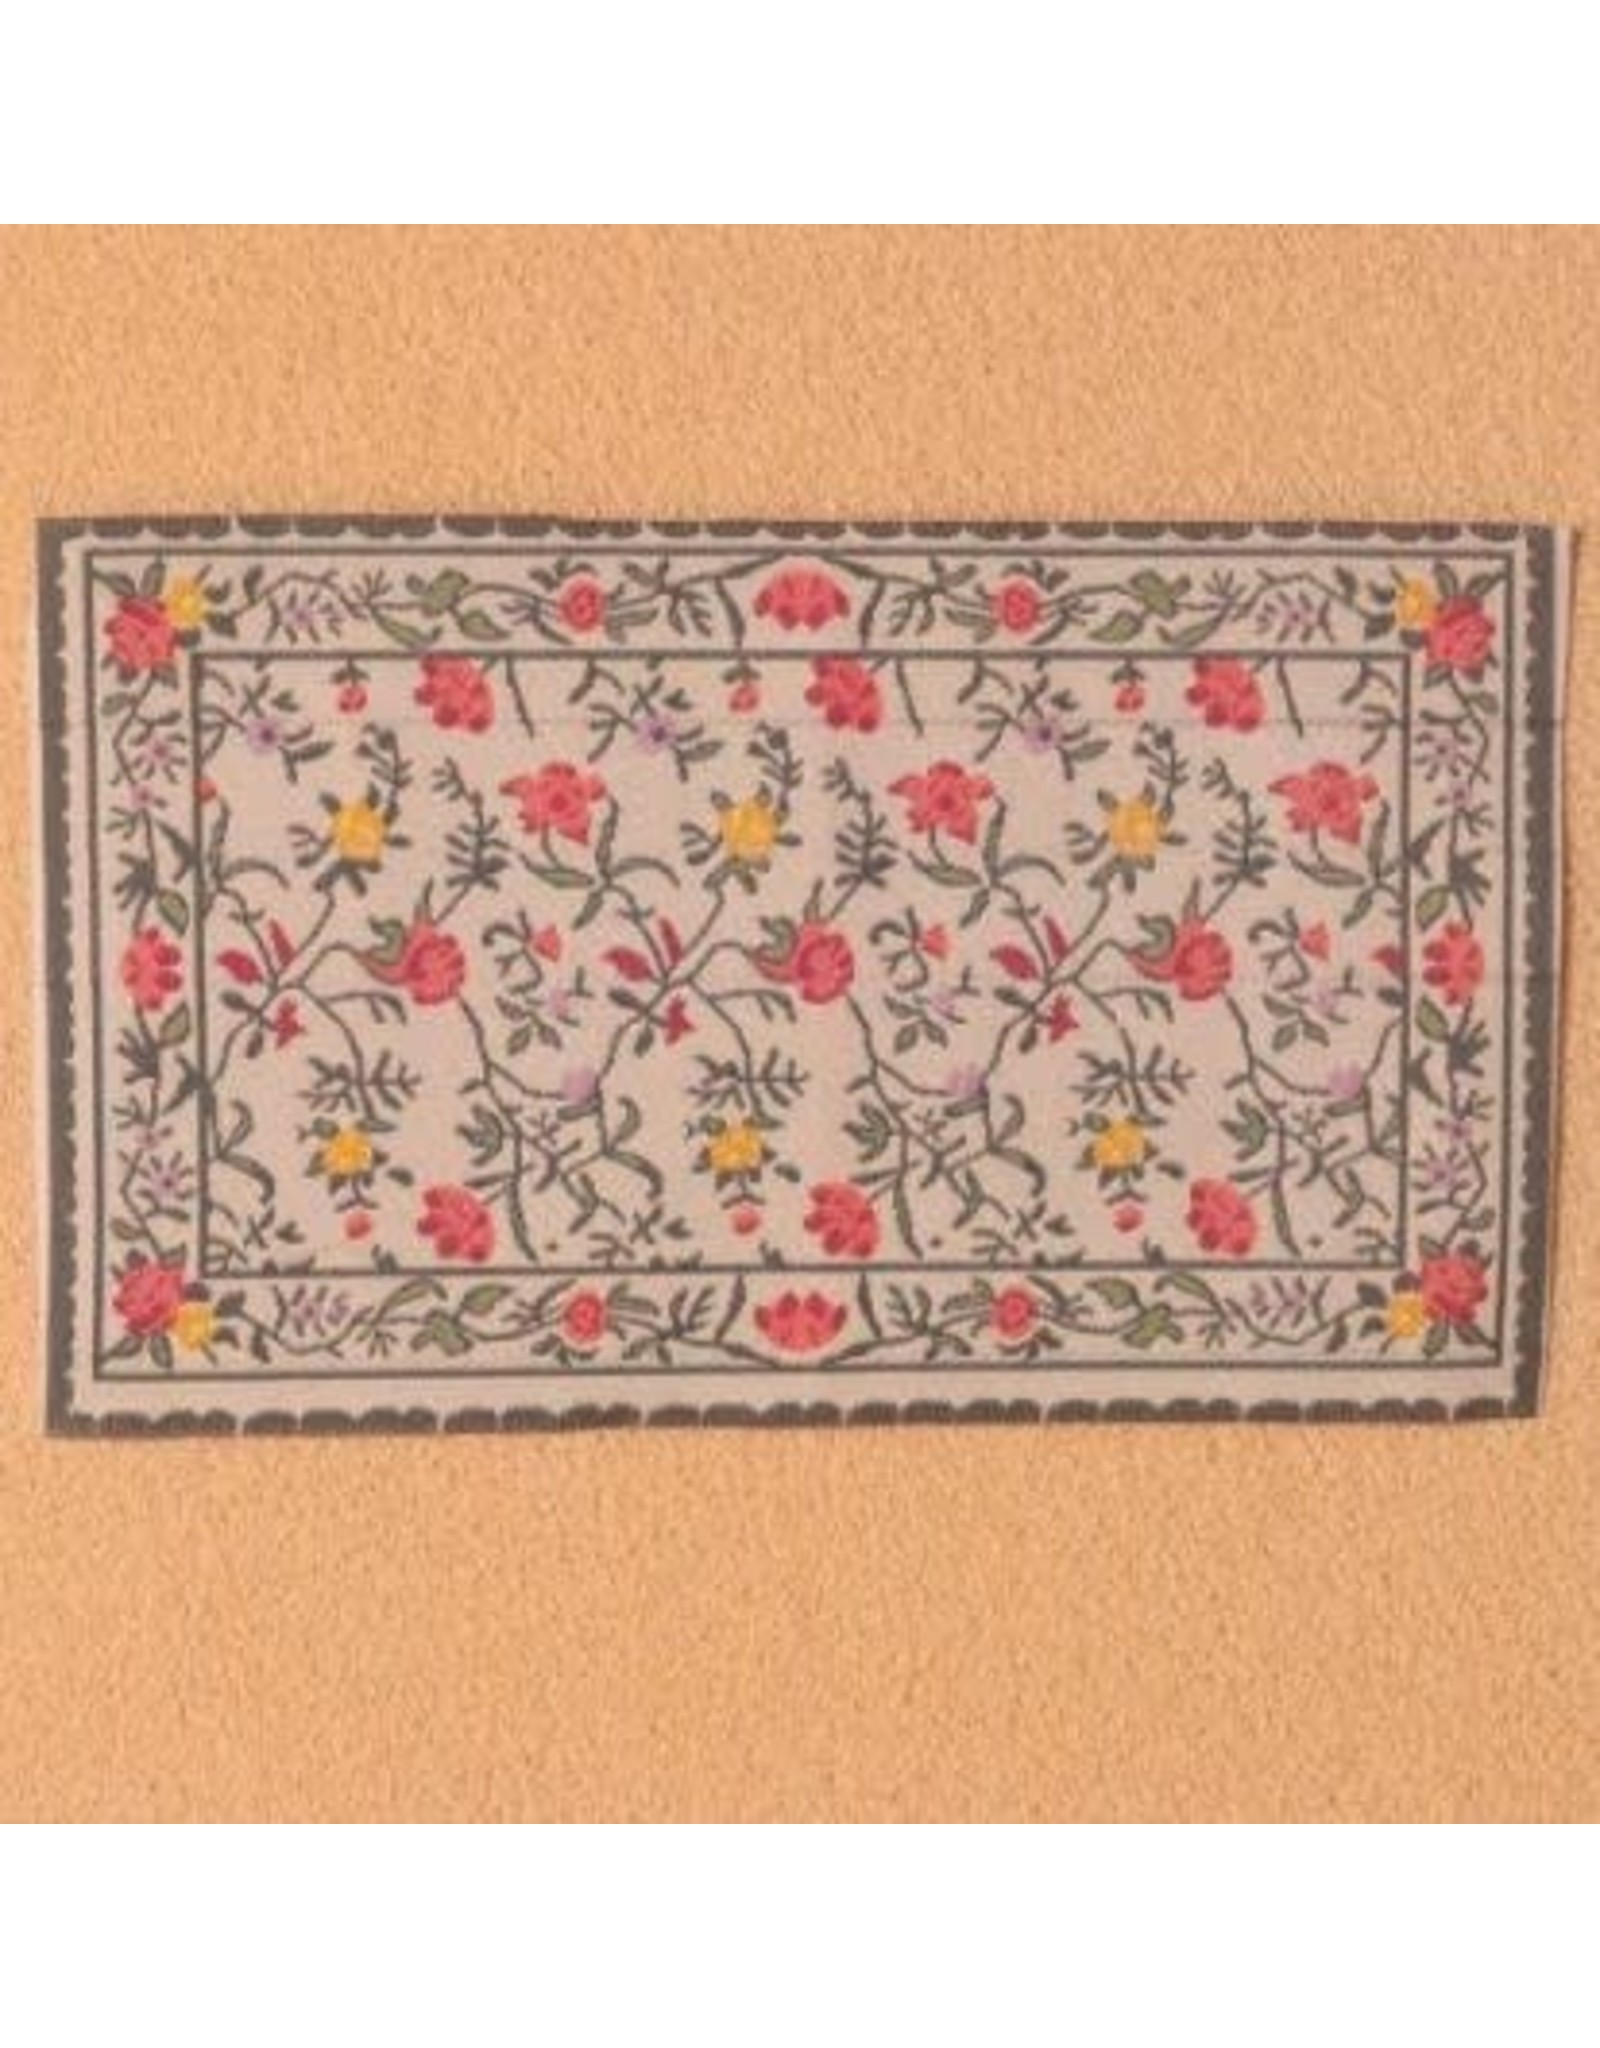 Tapis floral 10x17cm miniature 1:12